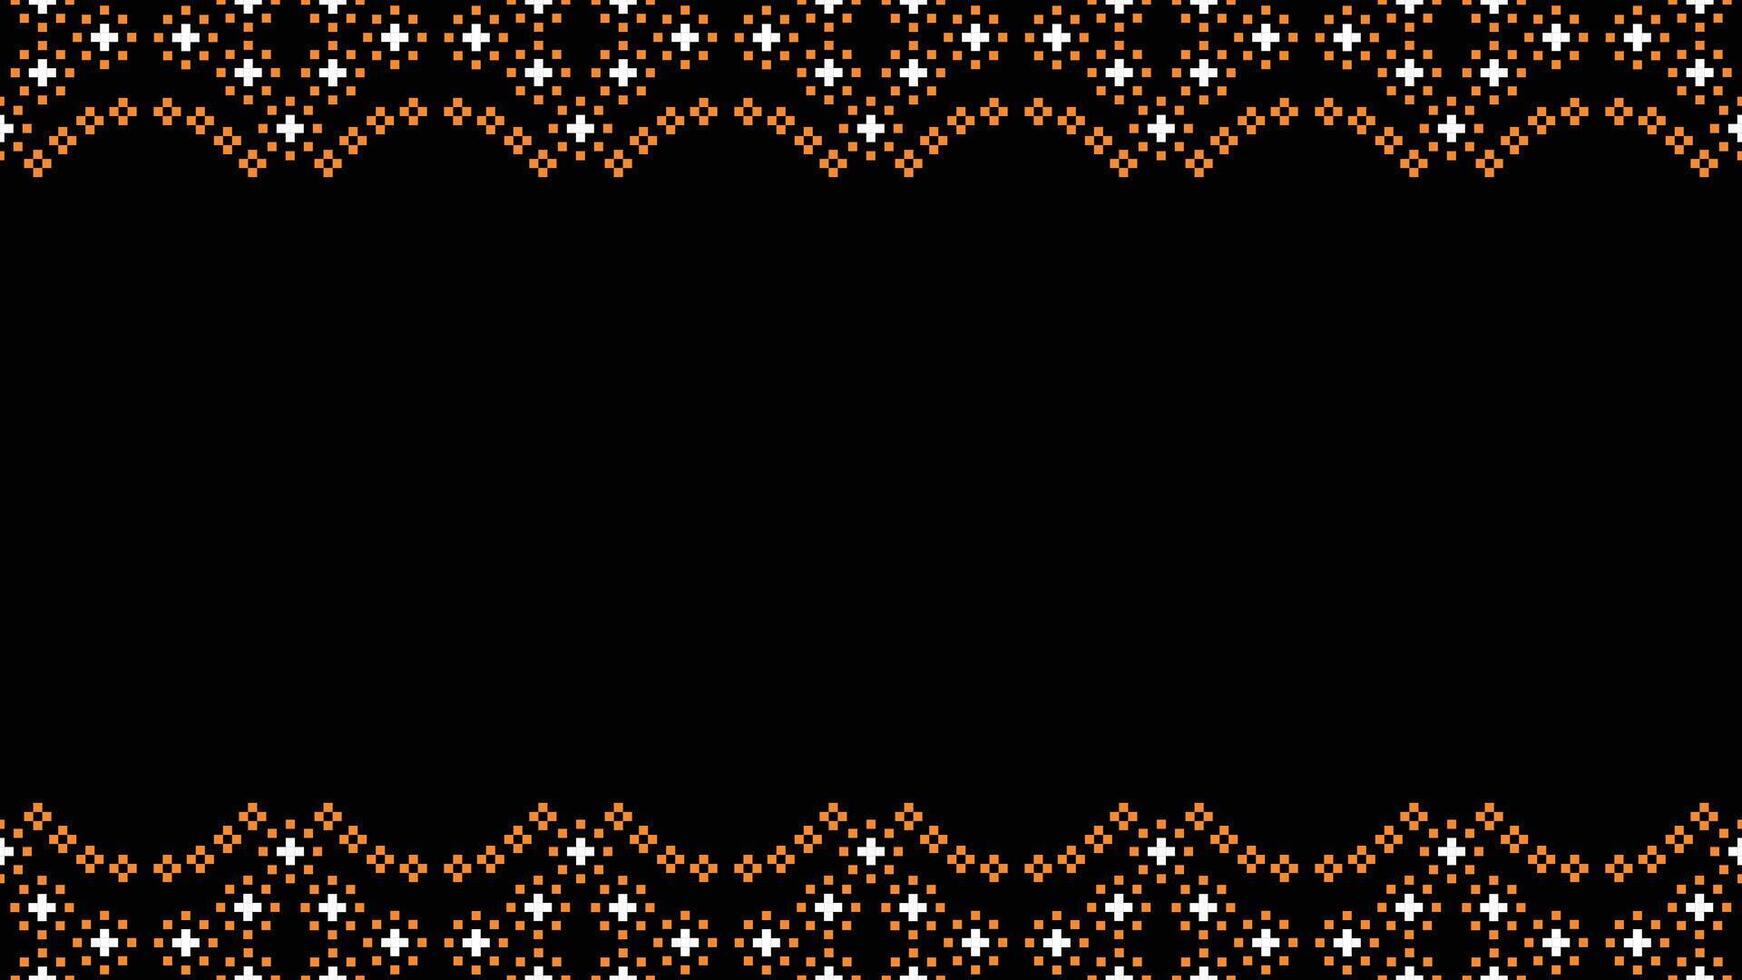 traditionnel ethnique motifs ikat géométrique en tissu modèle traverser point.ikat broderie ethnique Oriental pixel noir background.abstract, vecteur, illustration. texture, écharpe, décoration, papier peint. vecteur